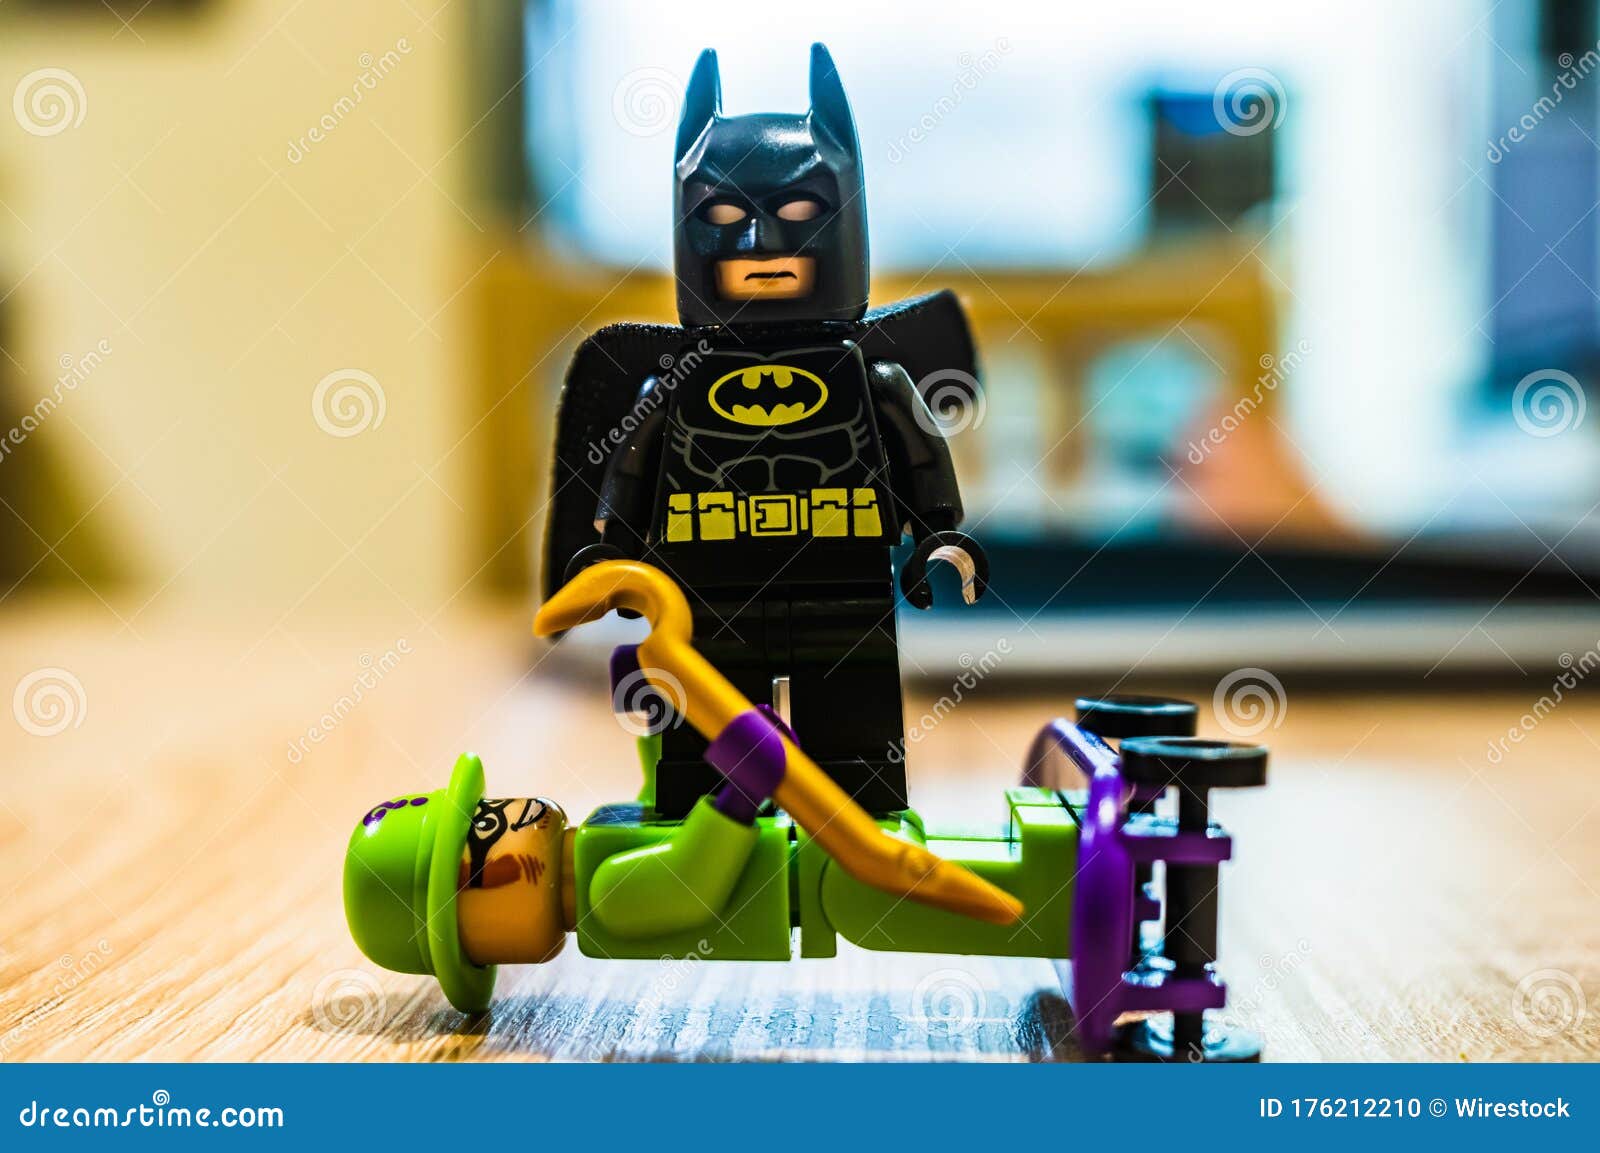 Lego batman imagem editorial. Imagem de lego, foco, inimigo - 176212210